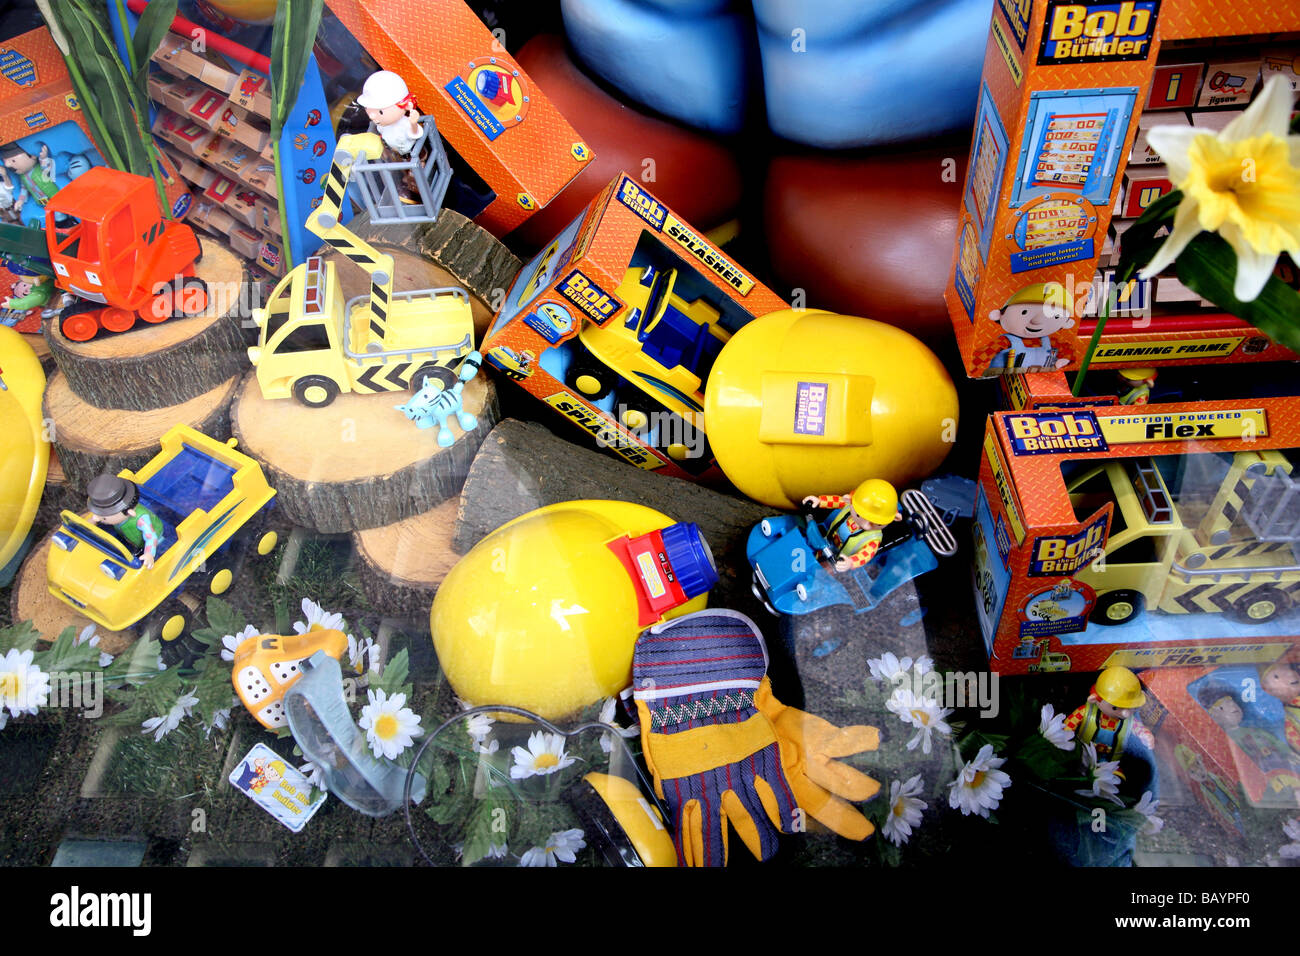 Bob der Baumeister-Spielzeug im Schaufenster London Stockfotografie - Alamy